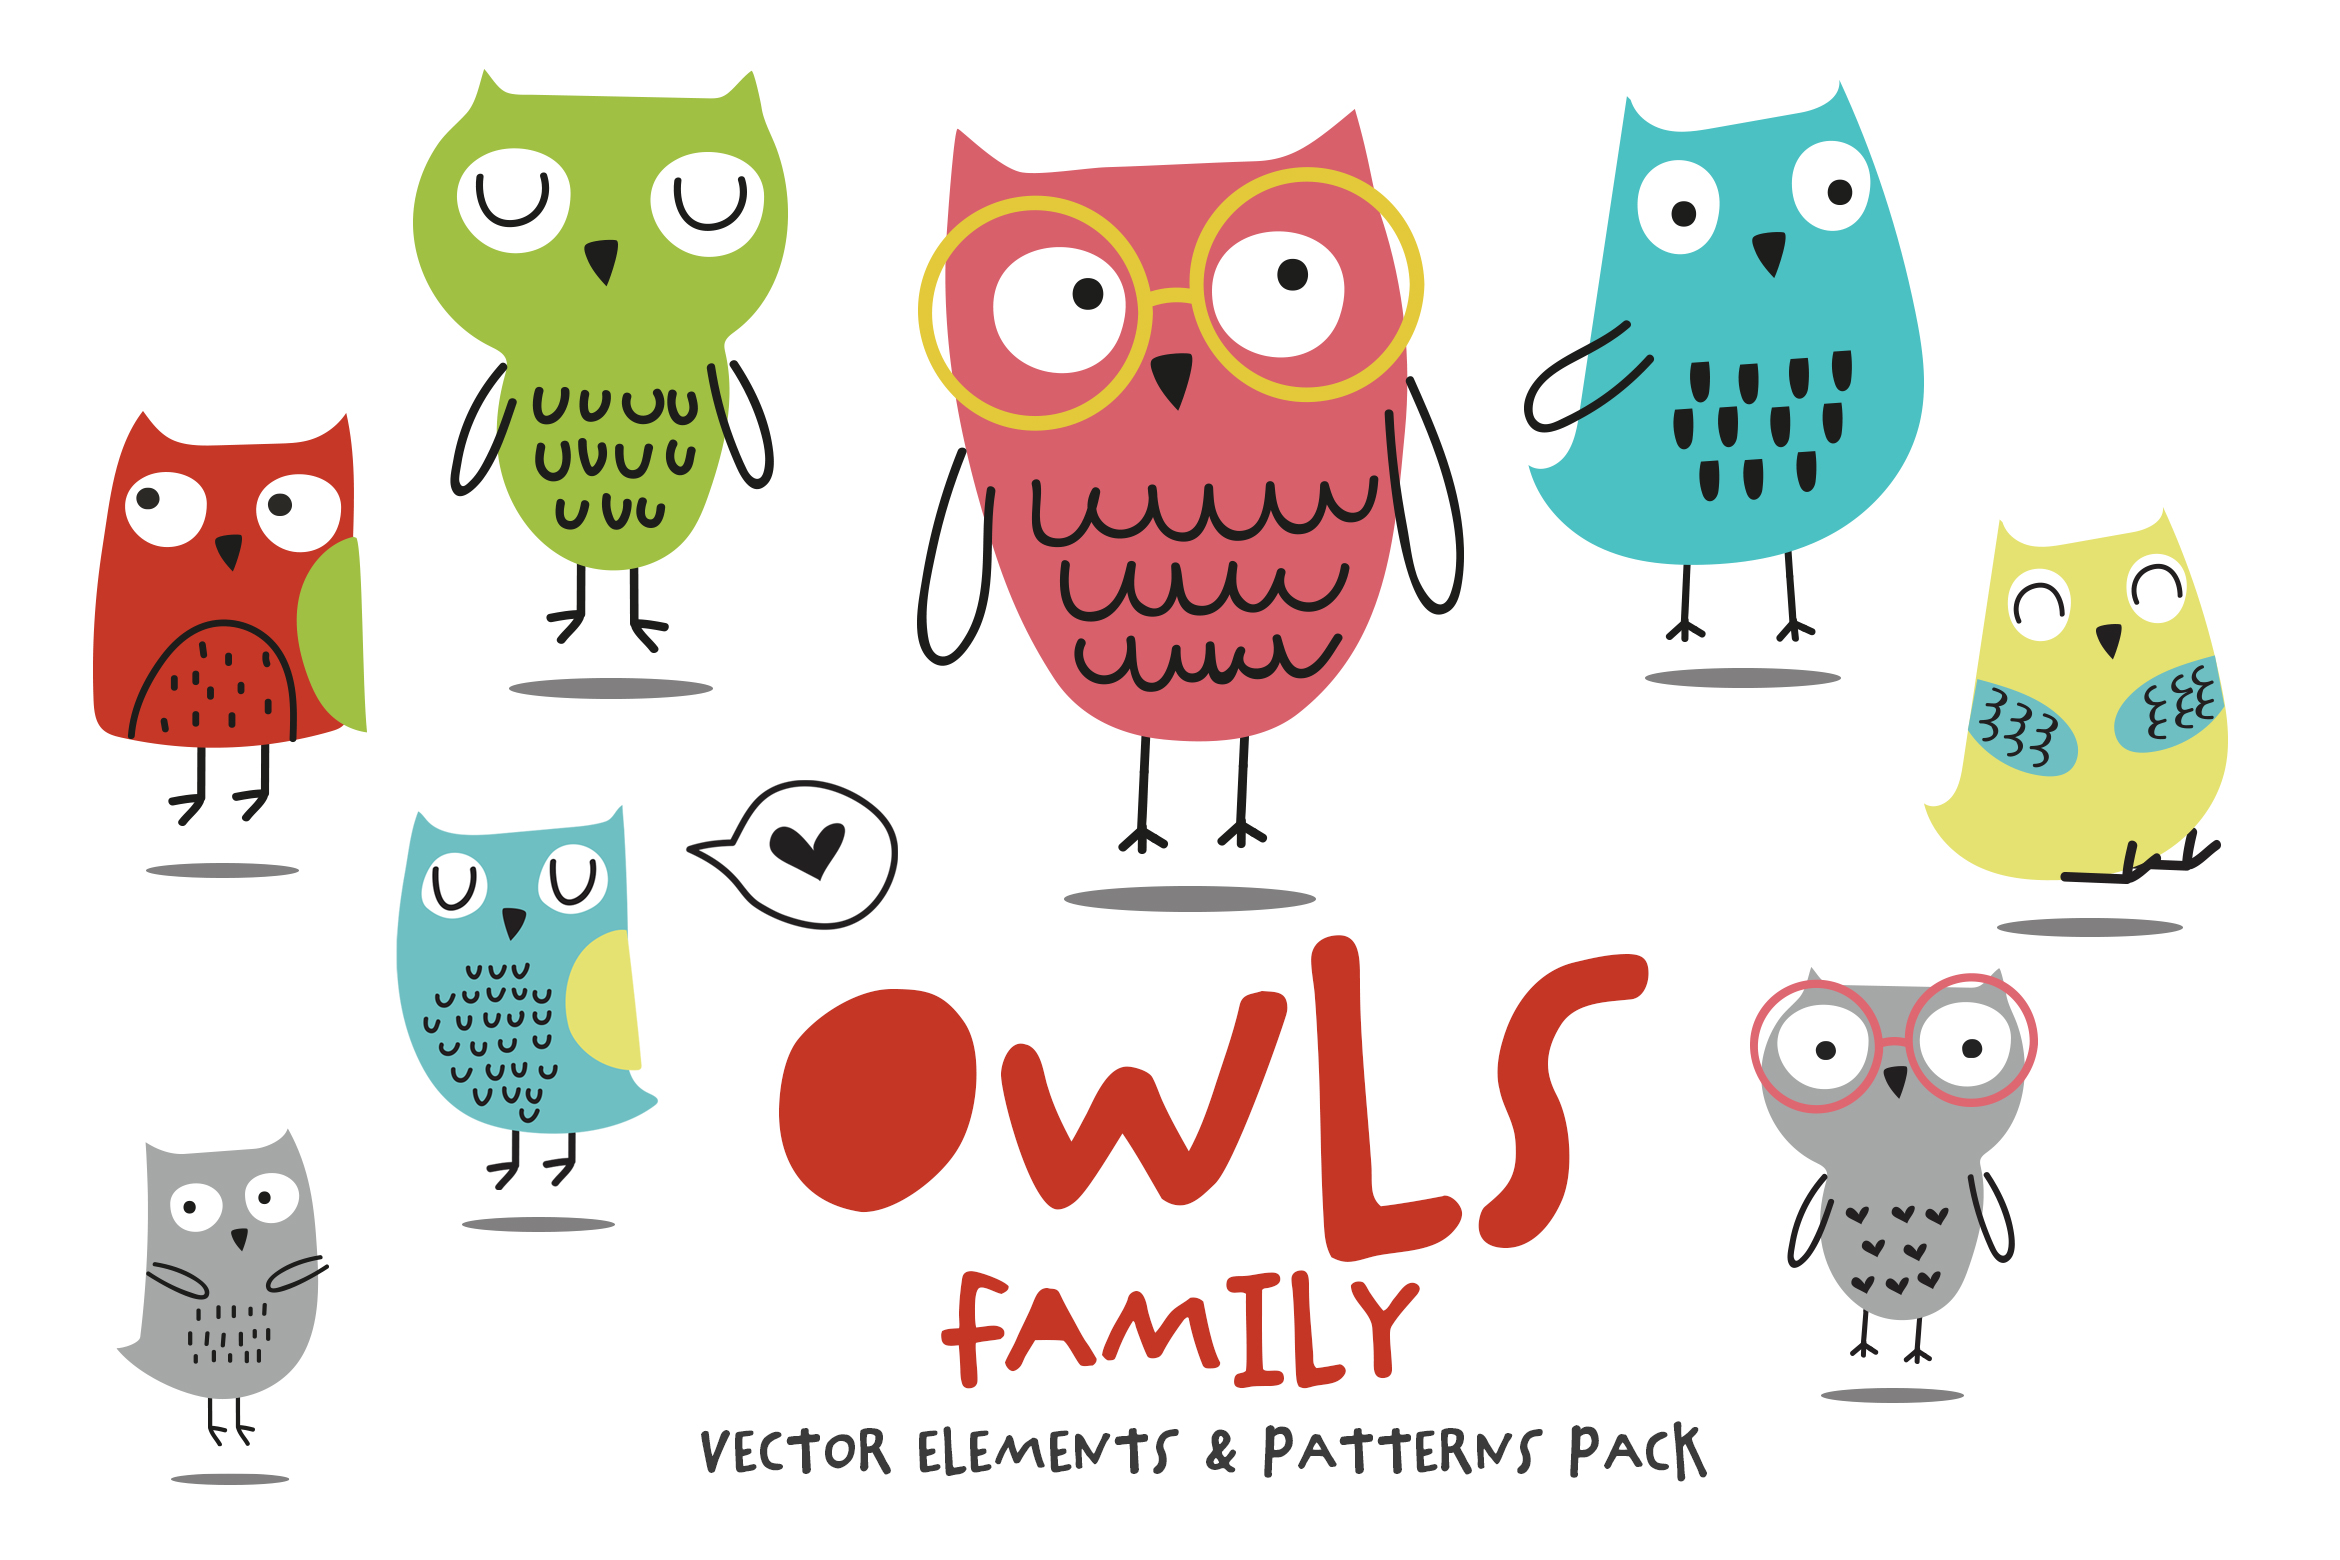 Owls_Family_Pack_1_2340.jpg